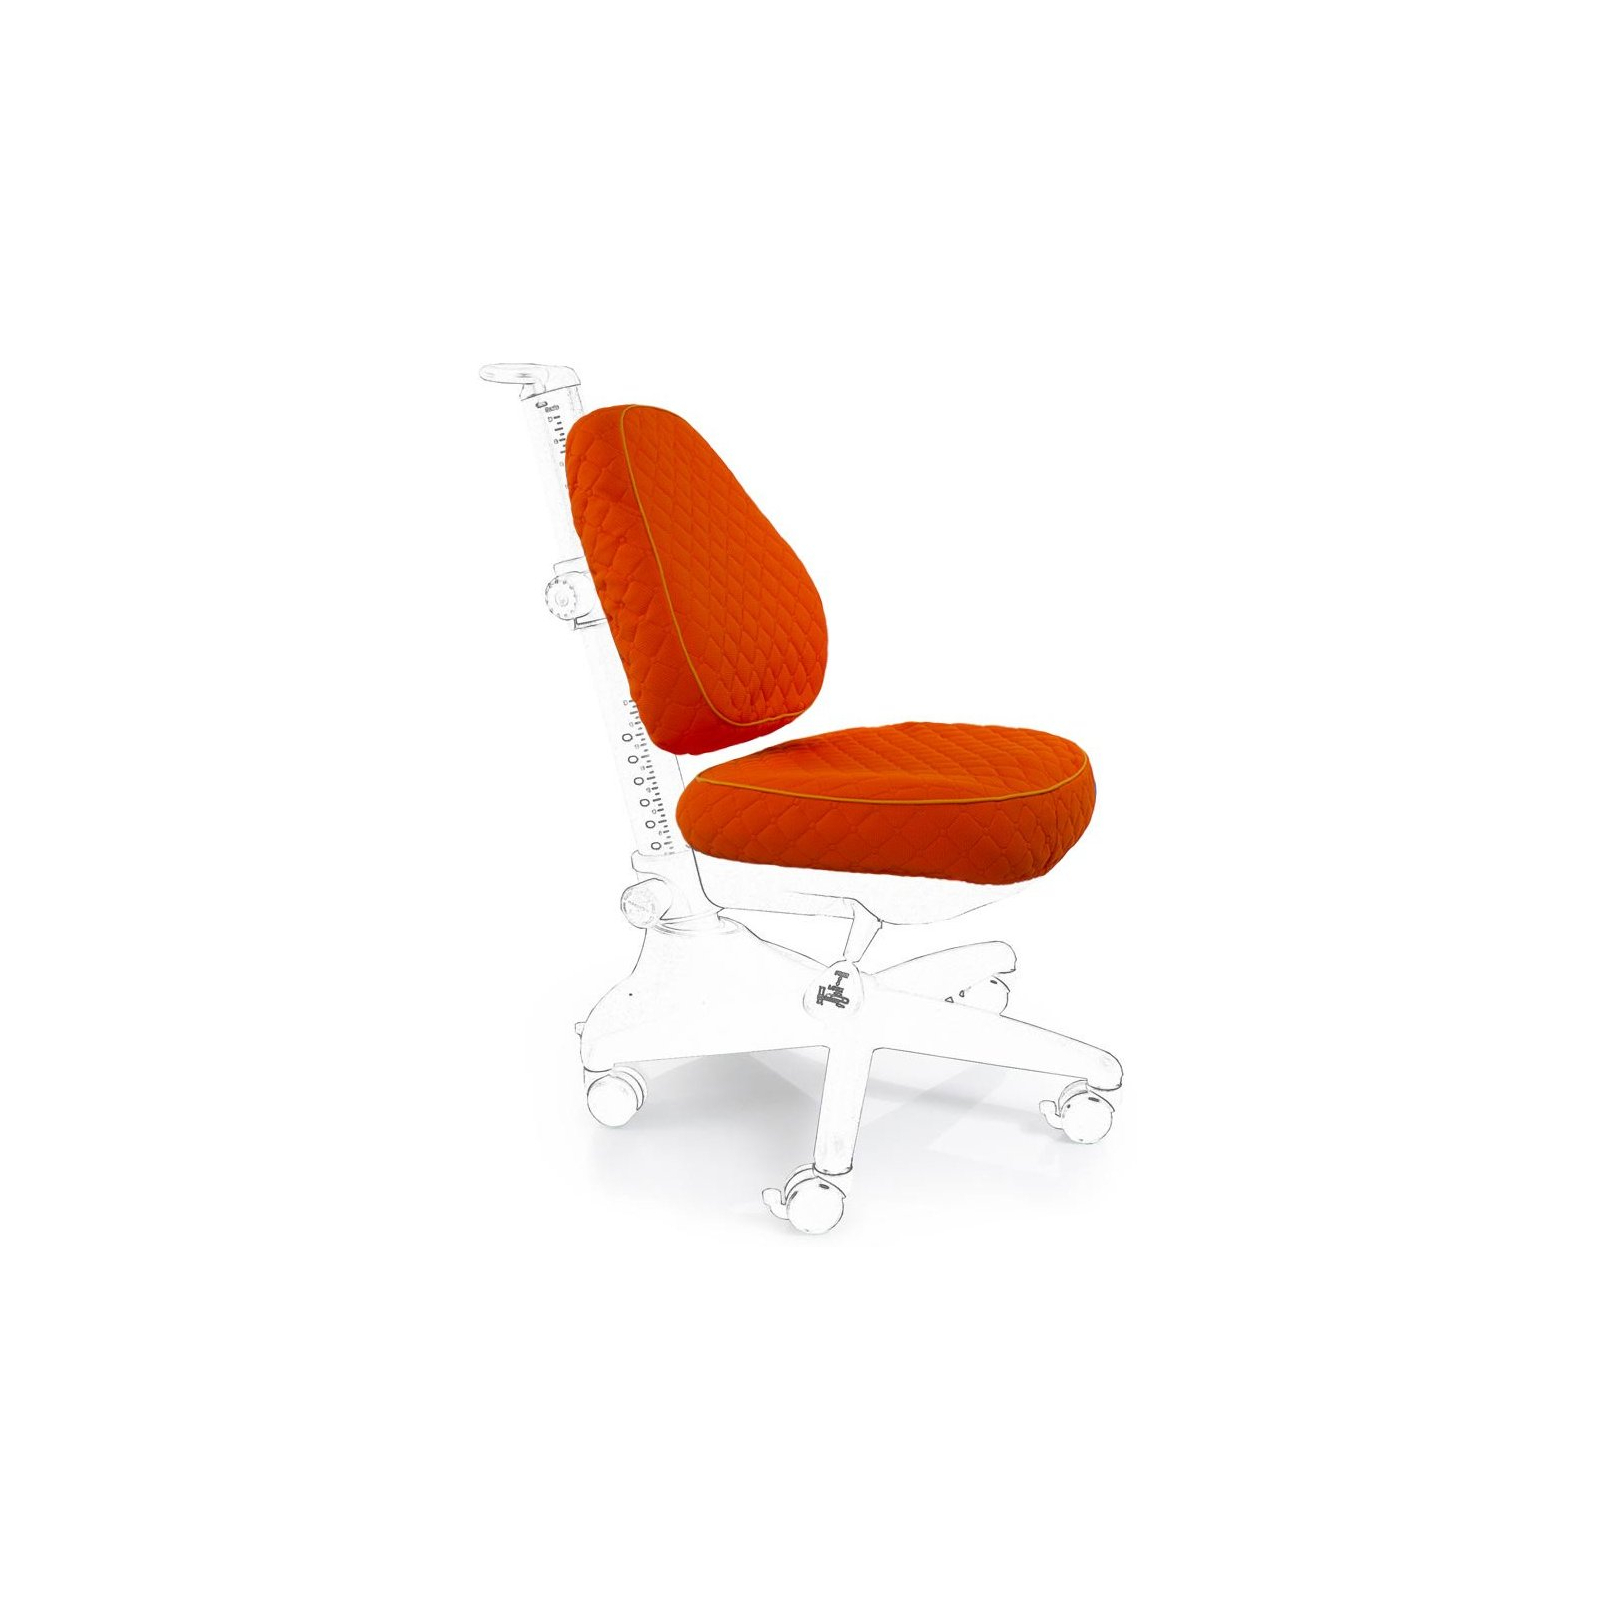 Чехол для кресла Mealux Conan оранжевый (Чехол KY (S) (Y-317))